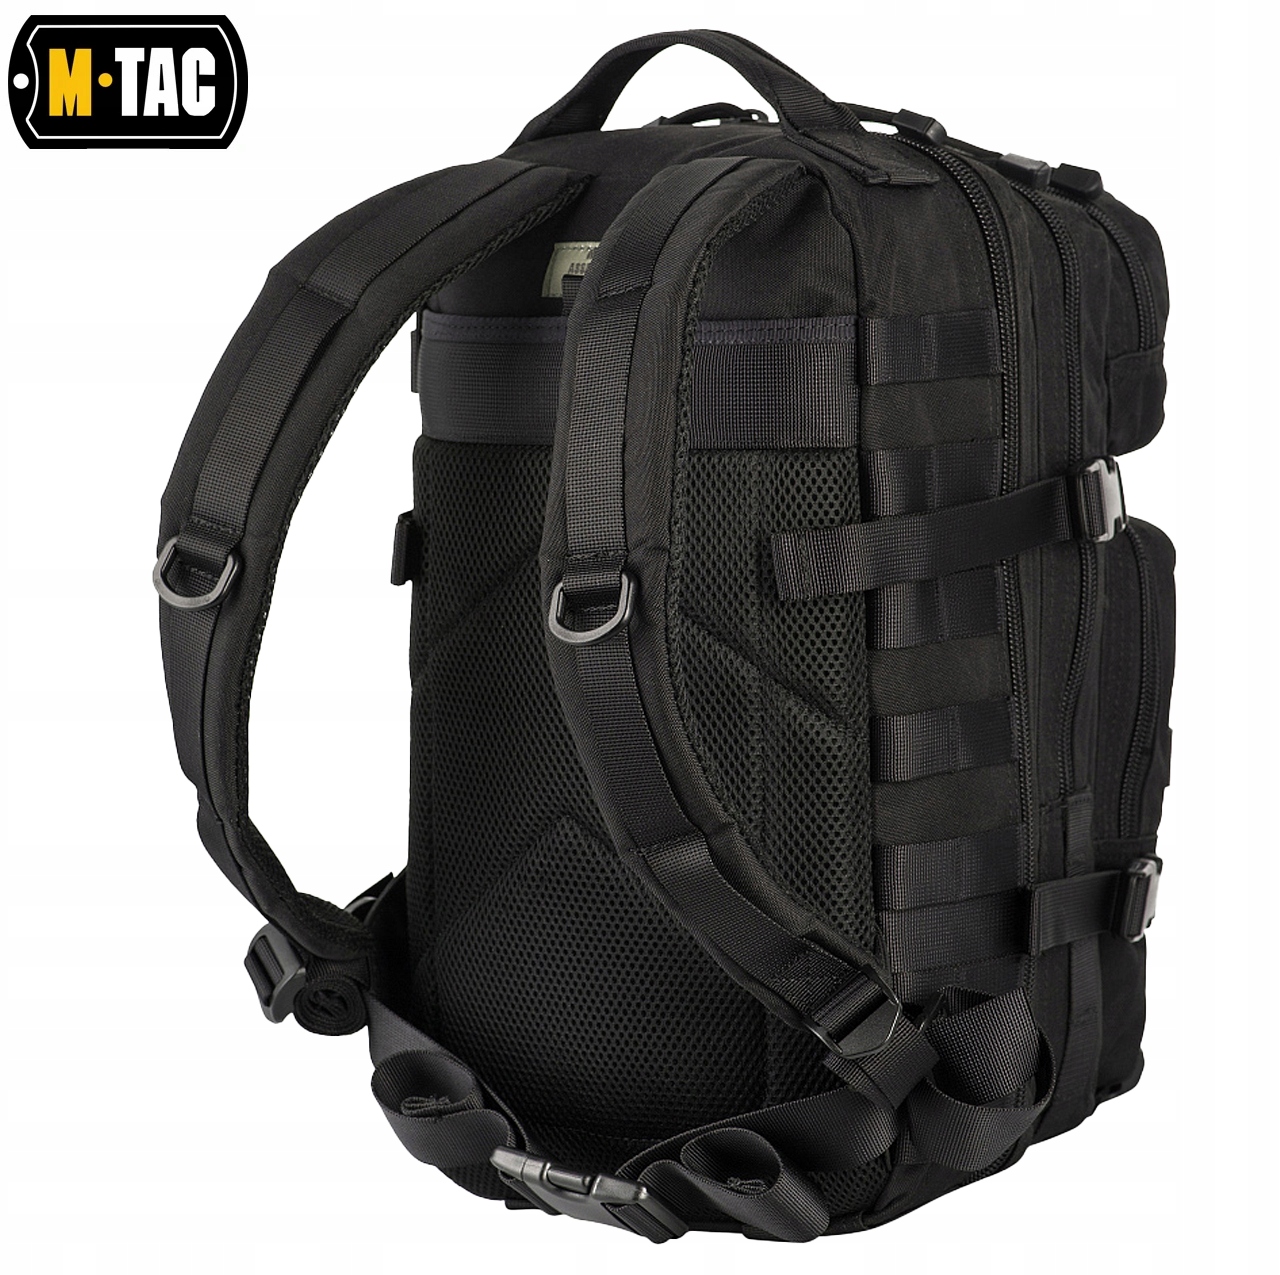 PLECAK WOJSKOWY TAKTYCZNY ASSAULT PACK M-TAC CZARNY Model M-Tac plecak Assault Pack